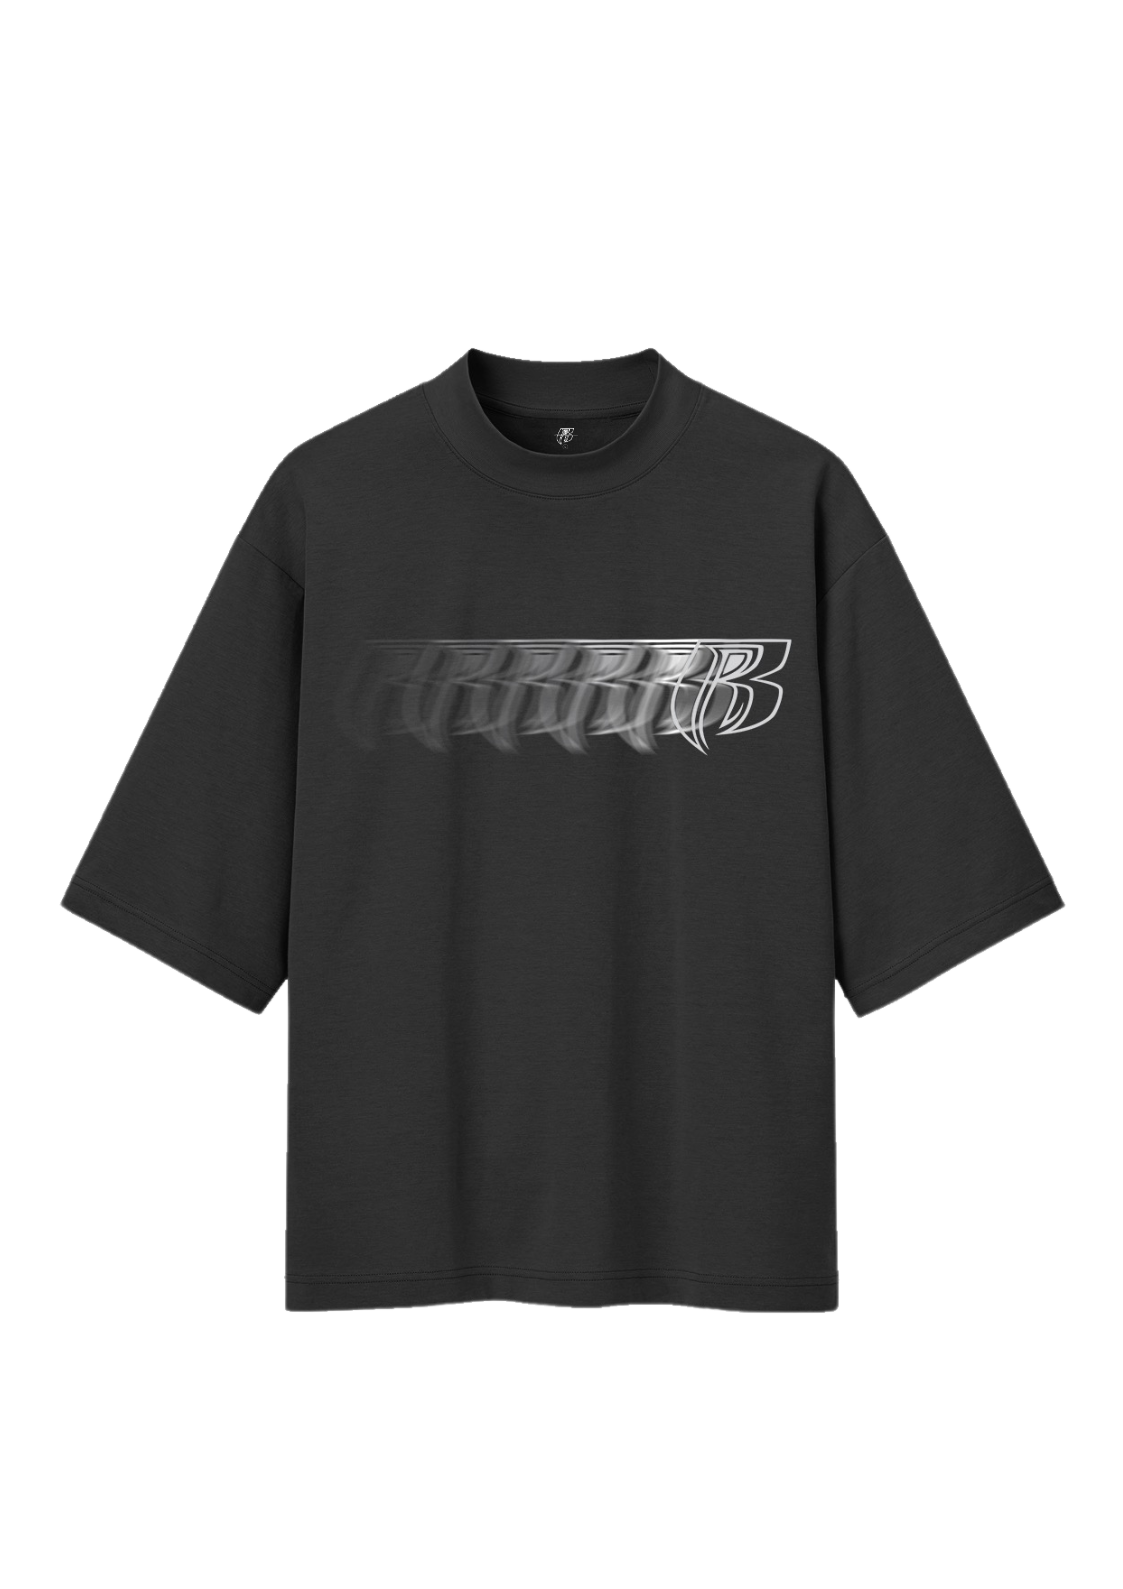 Drift Ruff Ryders T-Shirt